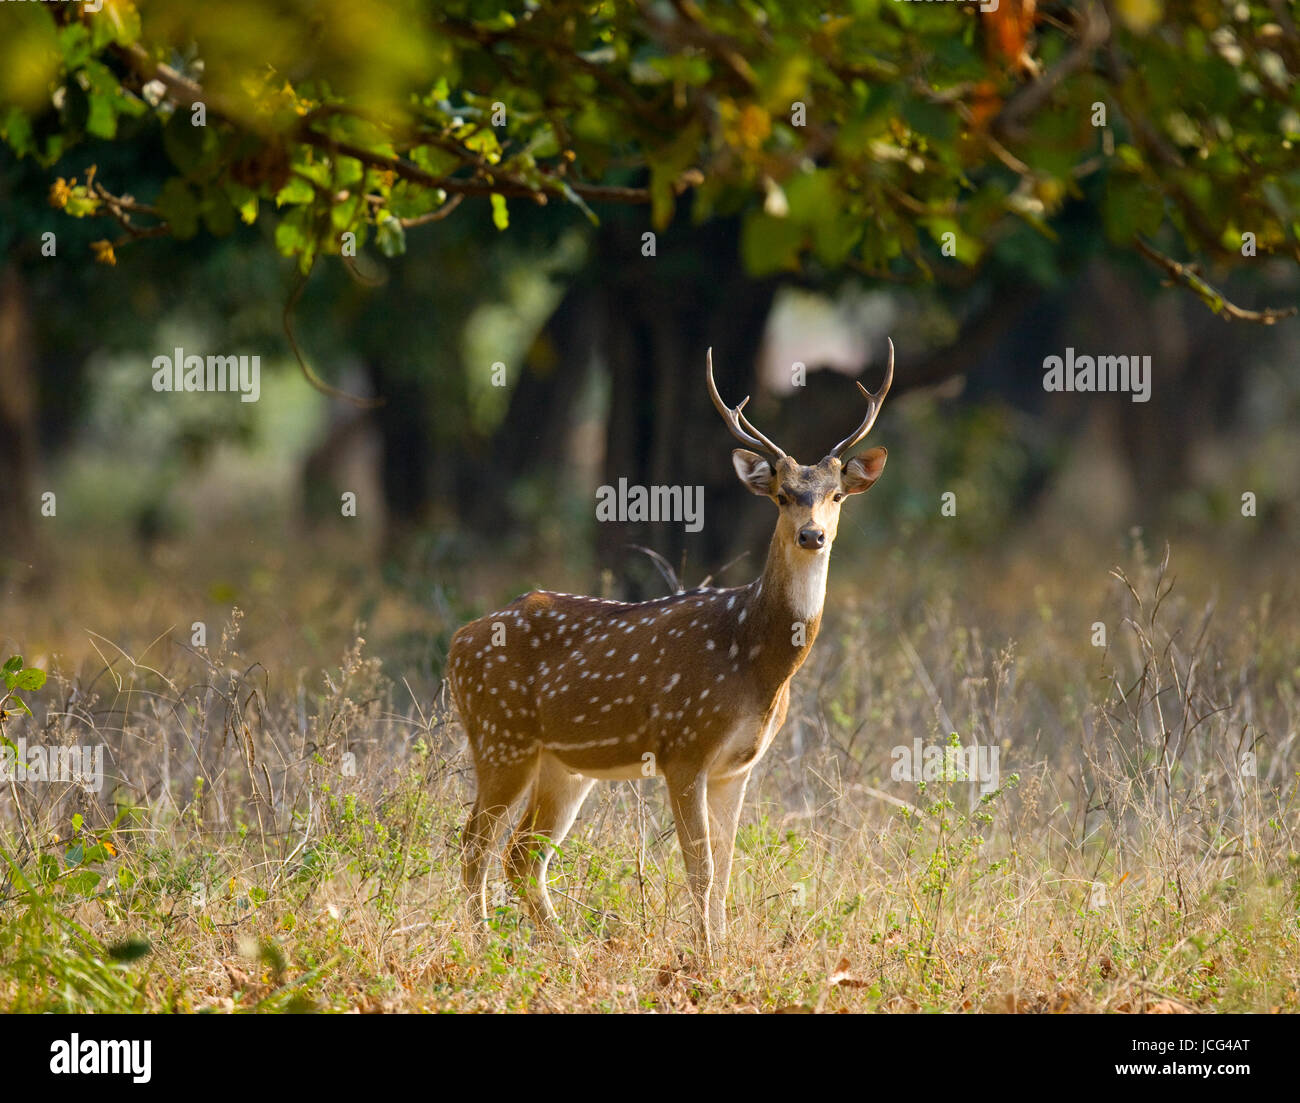 Hirsche mit wunderschönen Hörnern stehen im Dschungel in der Wildnis. Indien. Nationalpark. Stockfoto